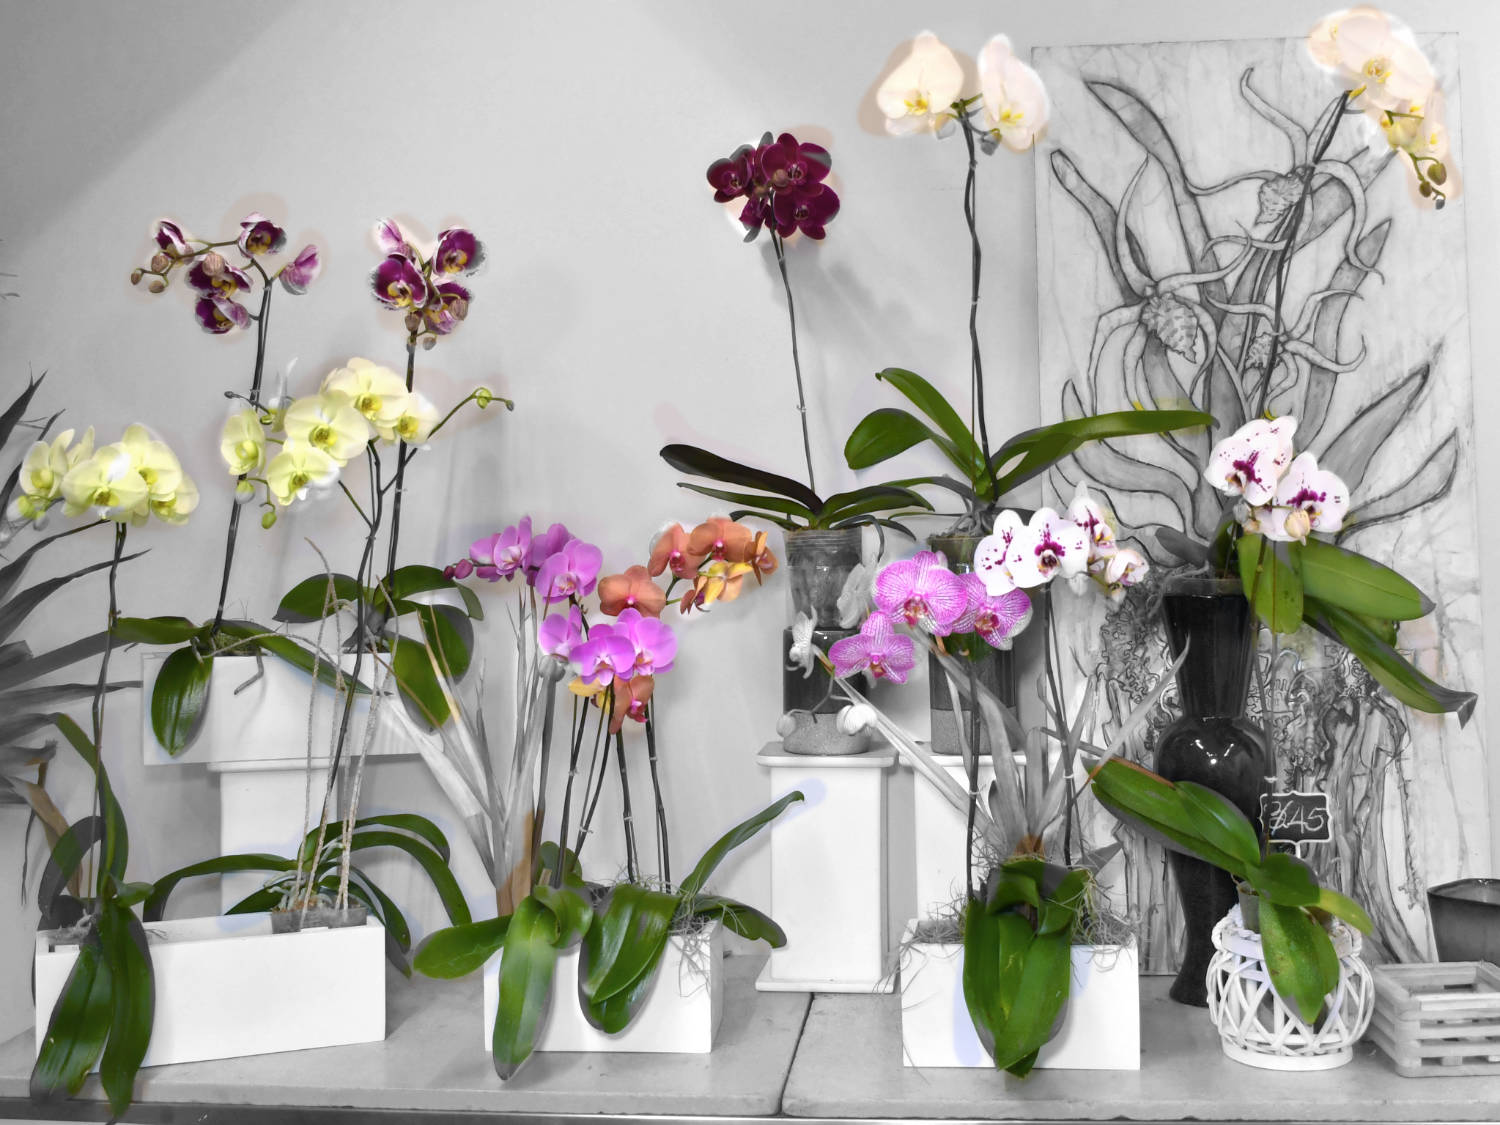 Boutique de Orquídeas a la Venta - Maduro's Tropical Flowers